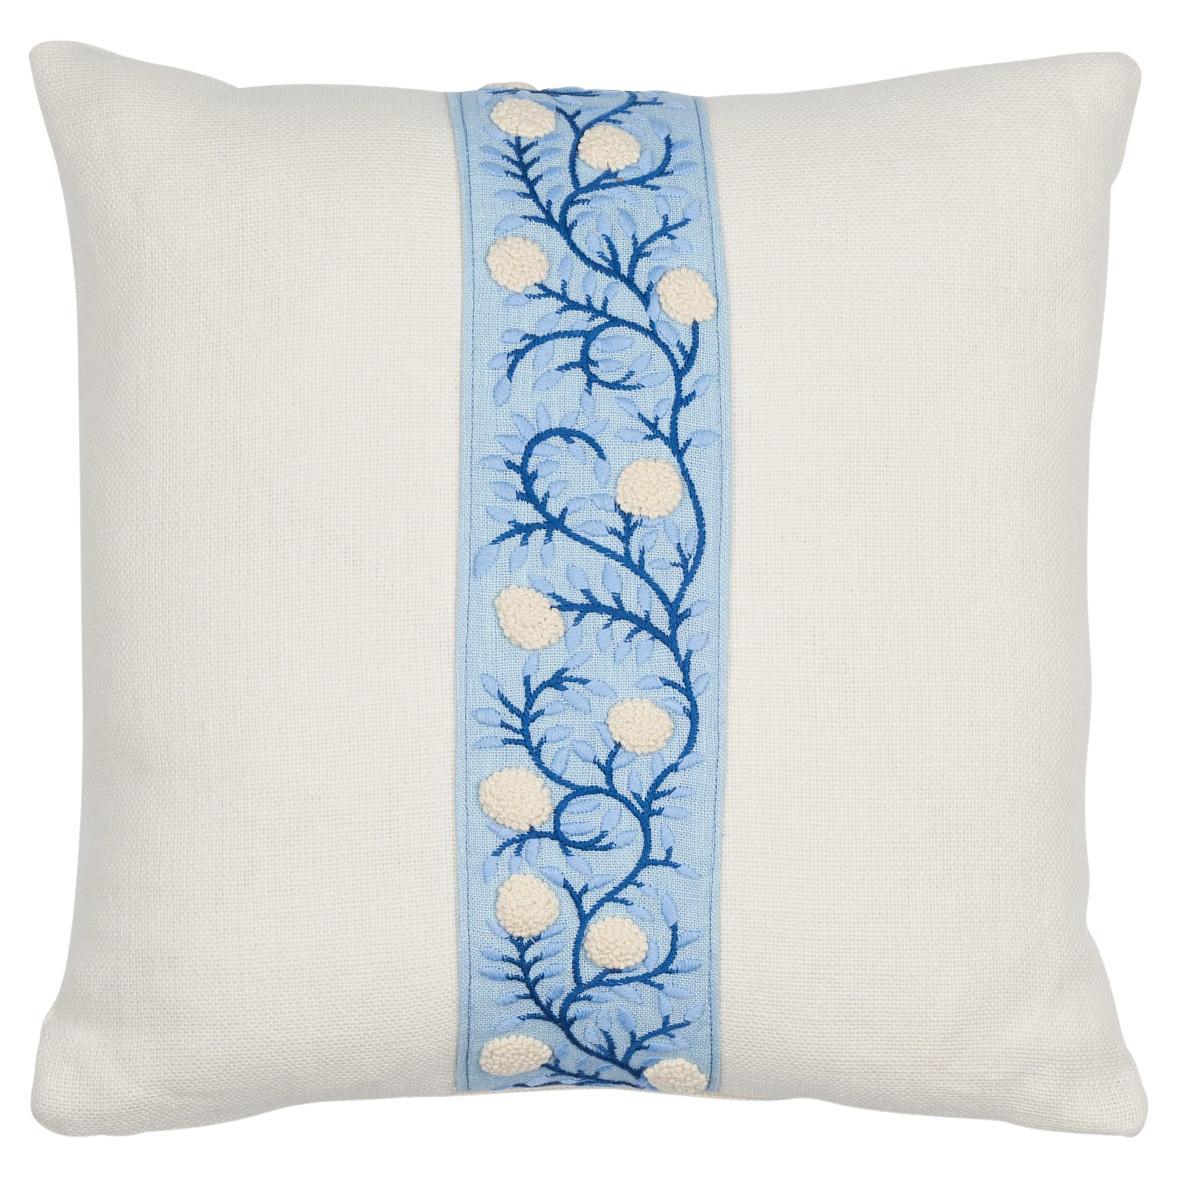 Shumacher Ashoka 16" Pillow in Ivory & Blue For Sale